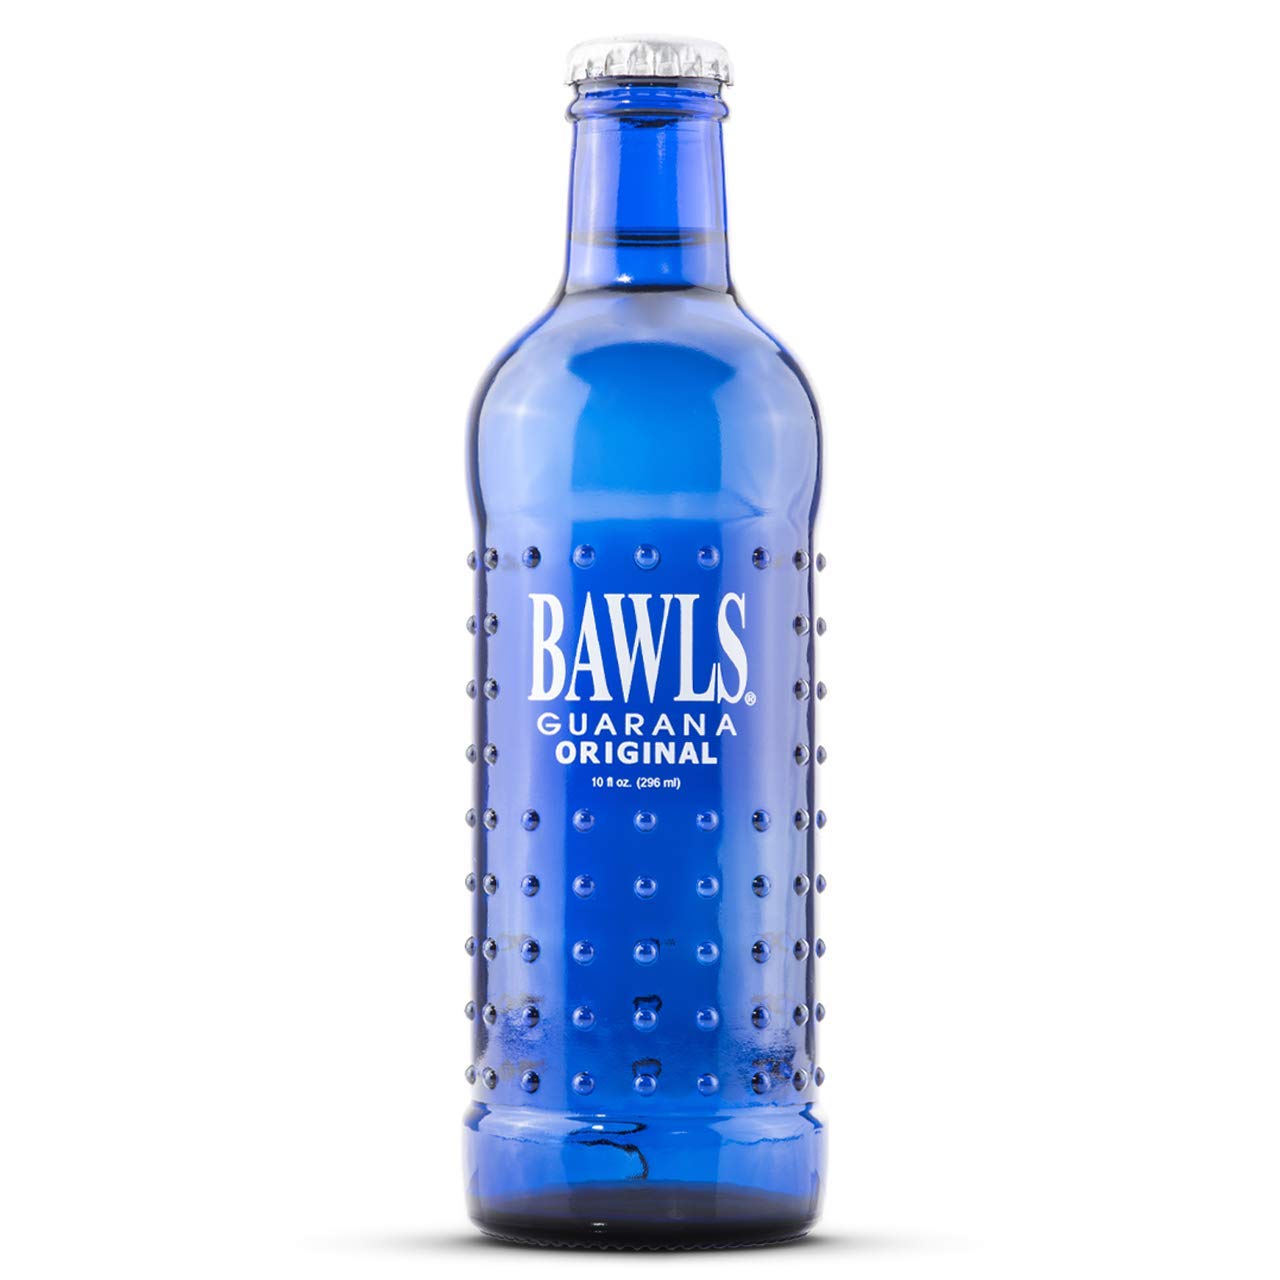 Bawls Guarana Original Soda